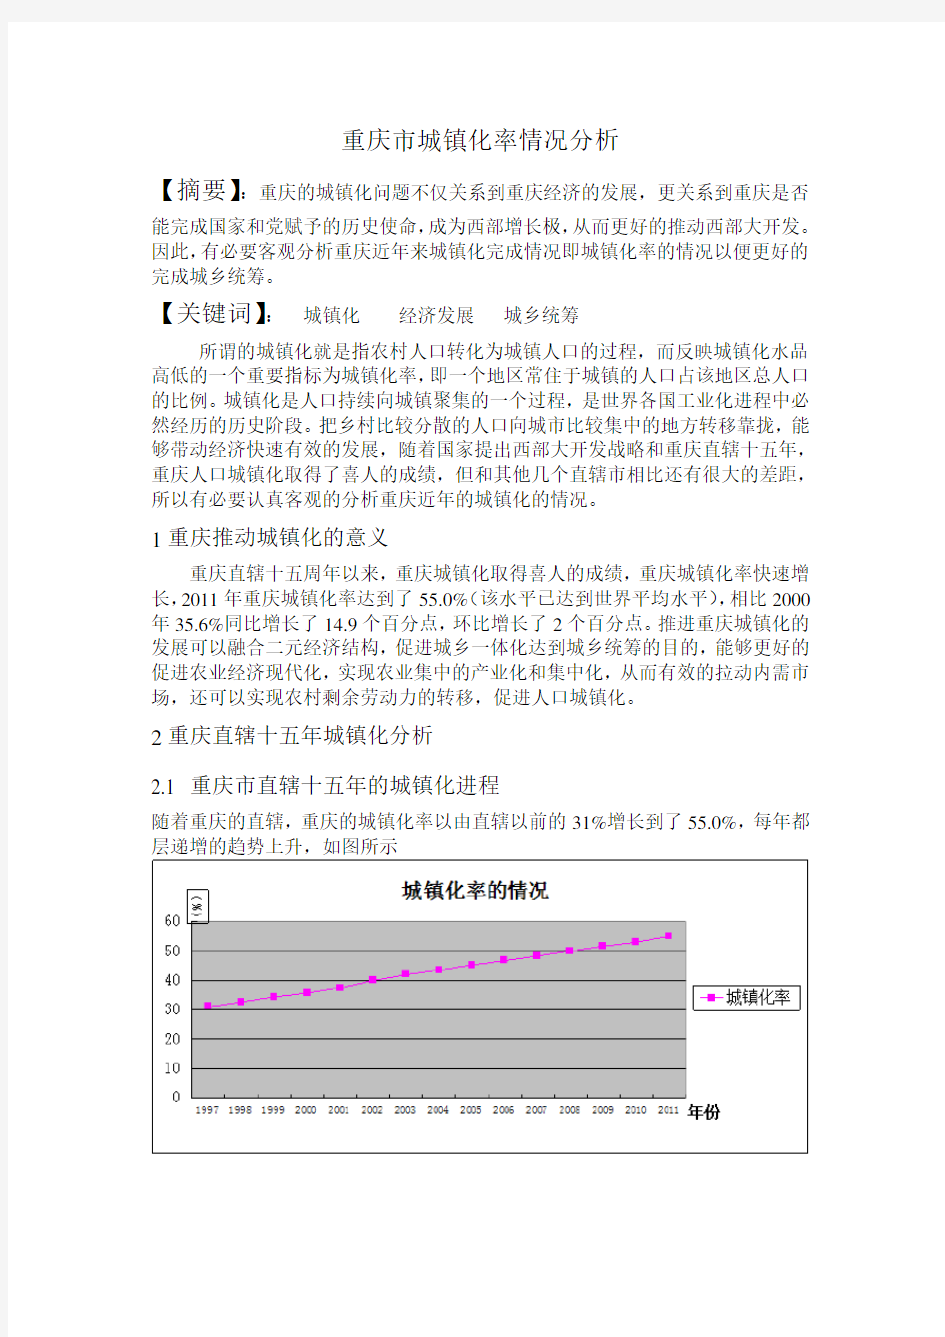 重庆市城镇化率情况分析